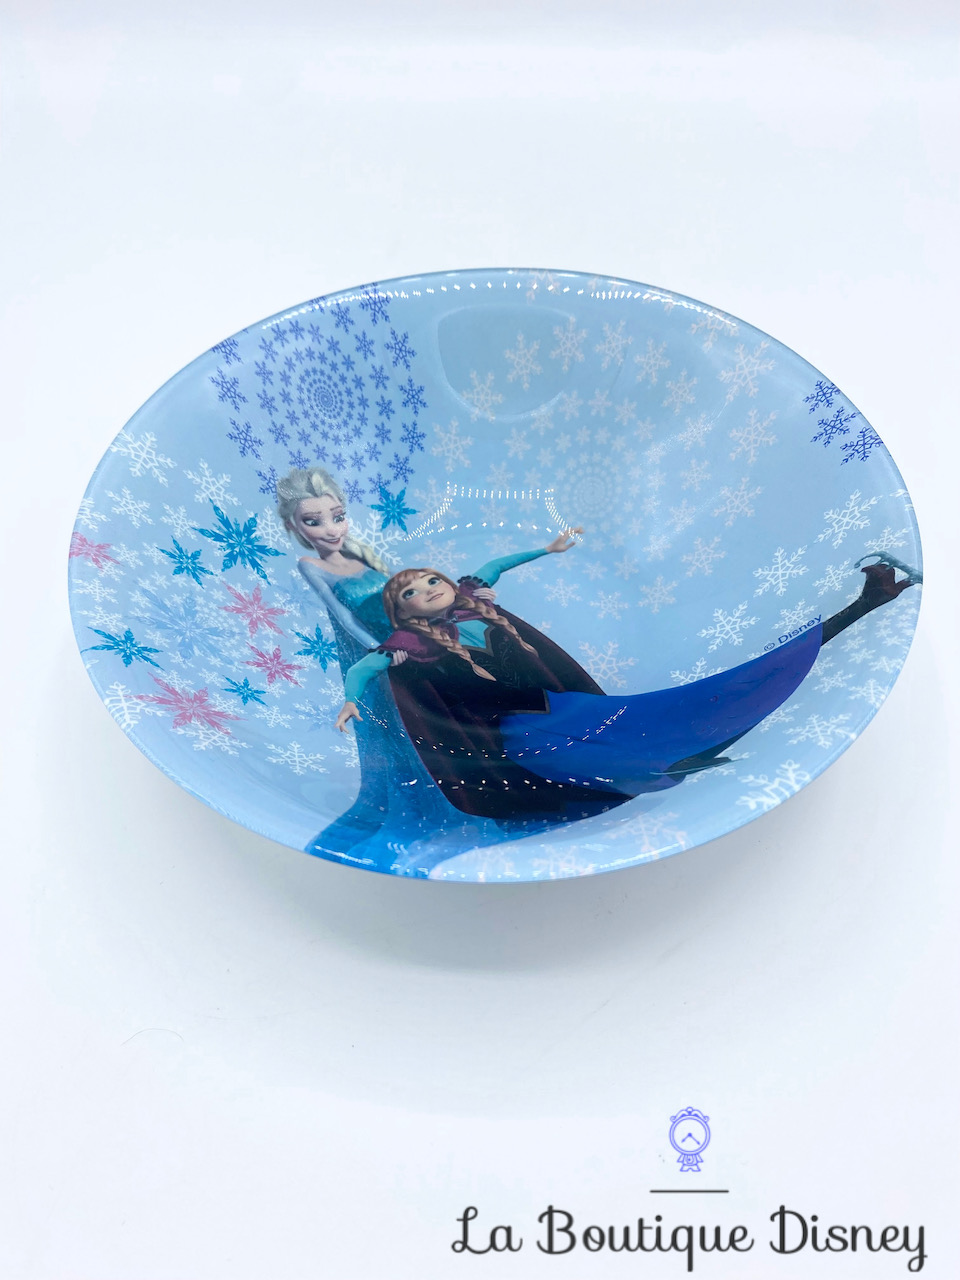 Assiette creuse Anna Elsa La reine des neiges Disney verre bleu